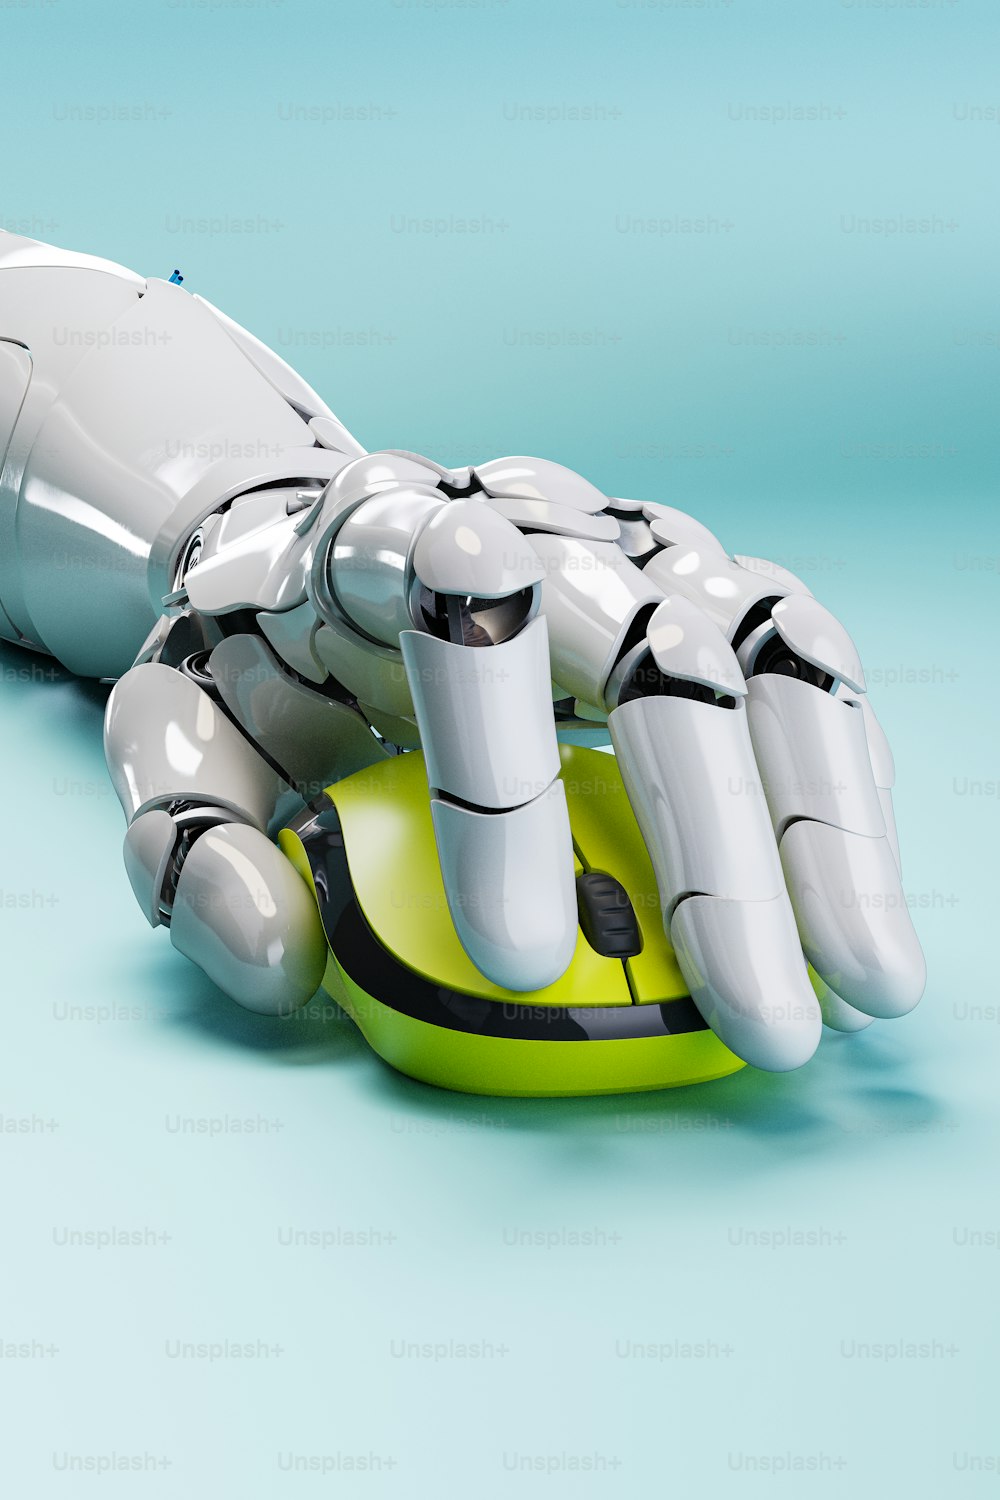 Eine Roboterhand, die auf einem grünen Objekt sitzt